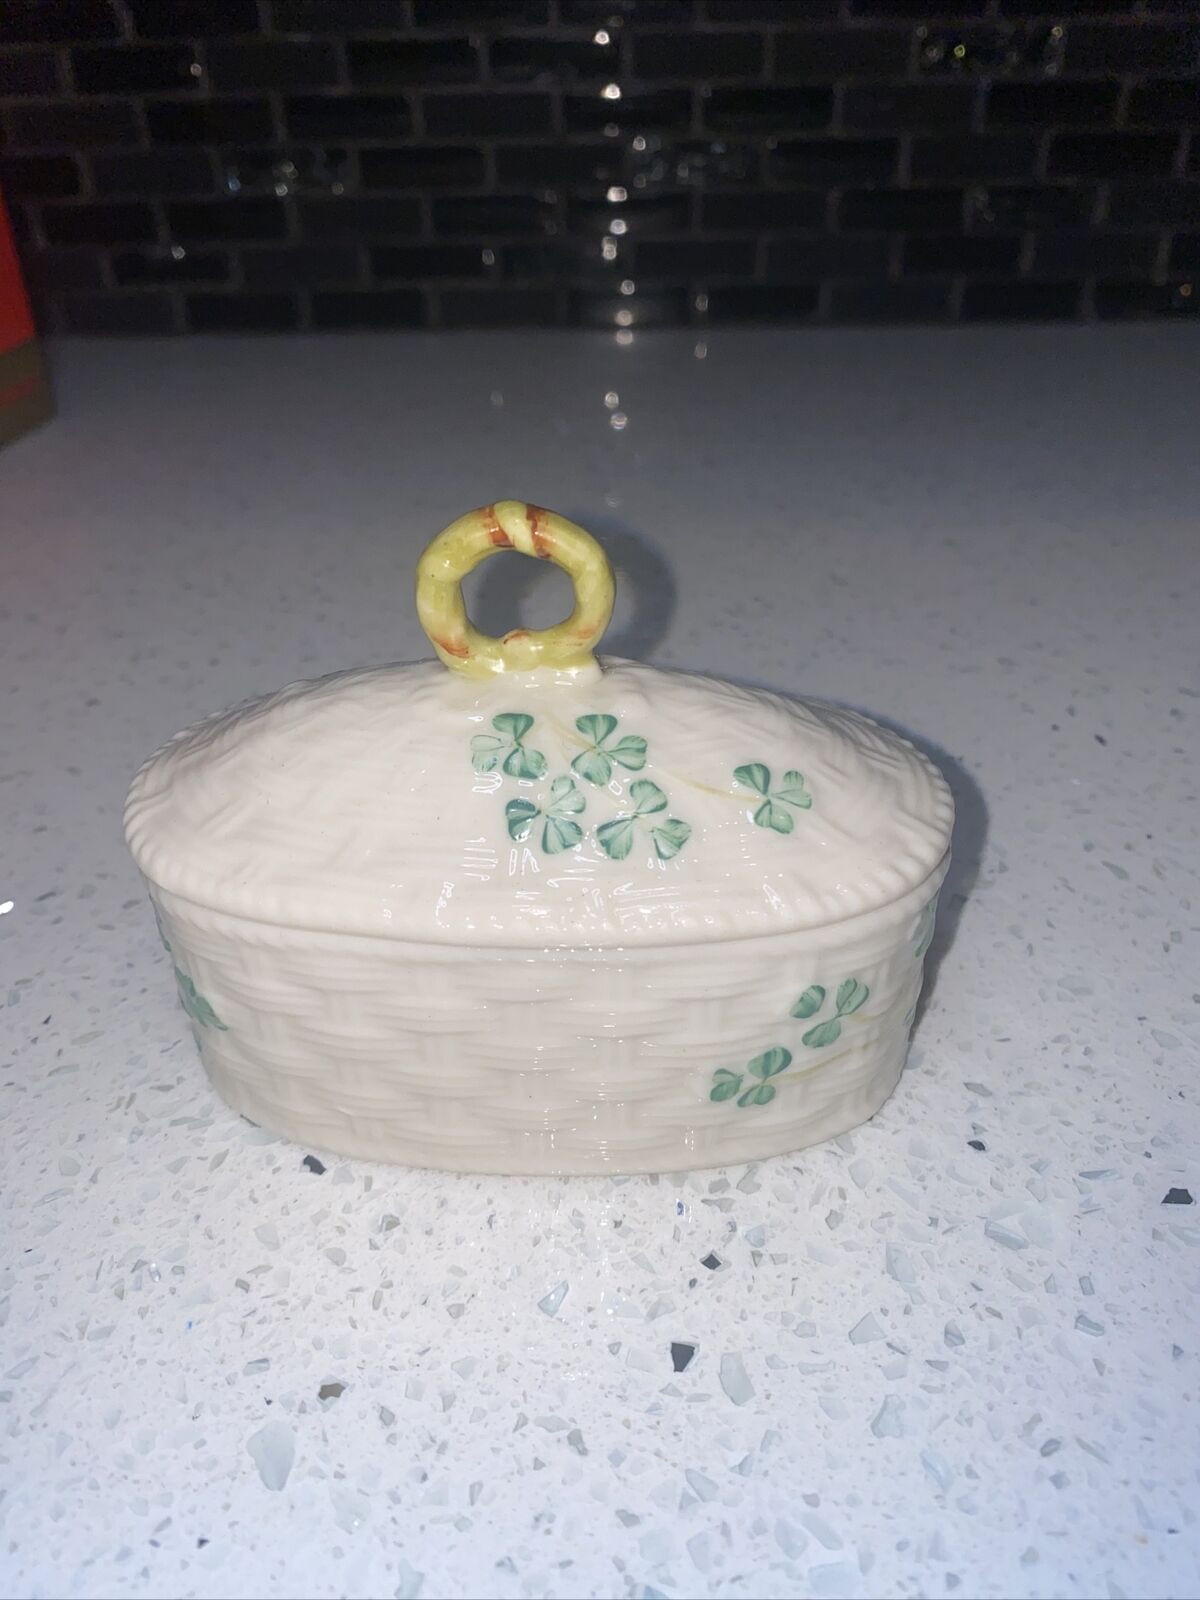 VTG Belleek Pottery Ireland Trinket Box w/Lid Basket Weave with Green Shamrocks